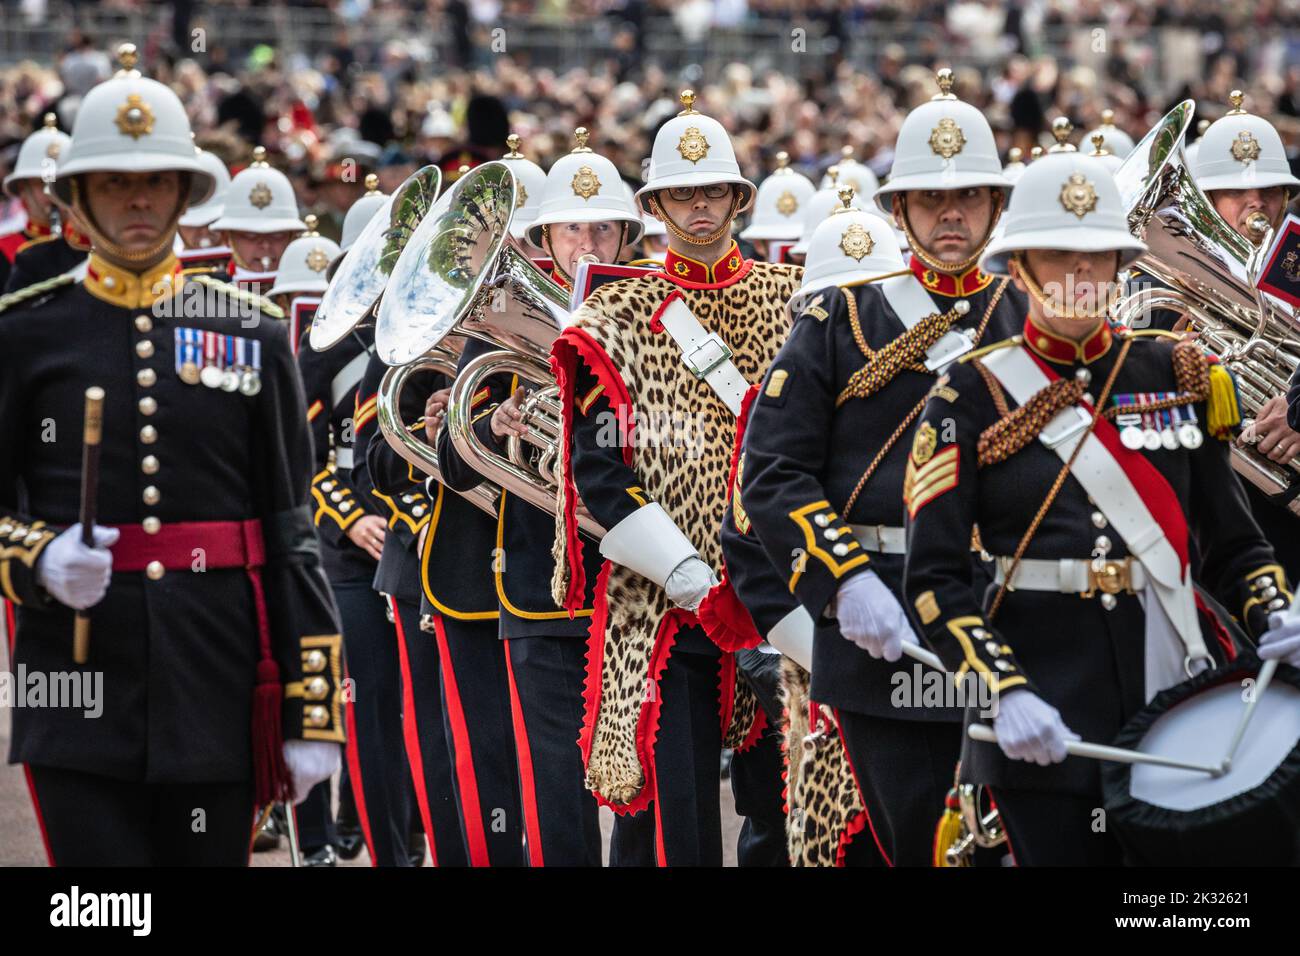 Grand Elizabeth II procession funéraire à Londres, 22 septembre 2022, Angleterre, Royaume-Uni Banque D'Images